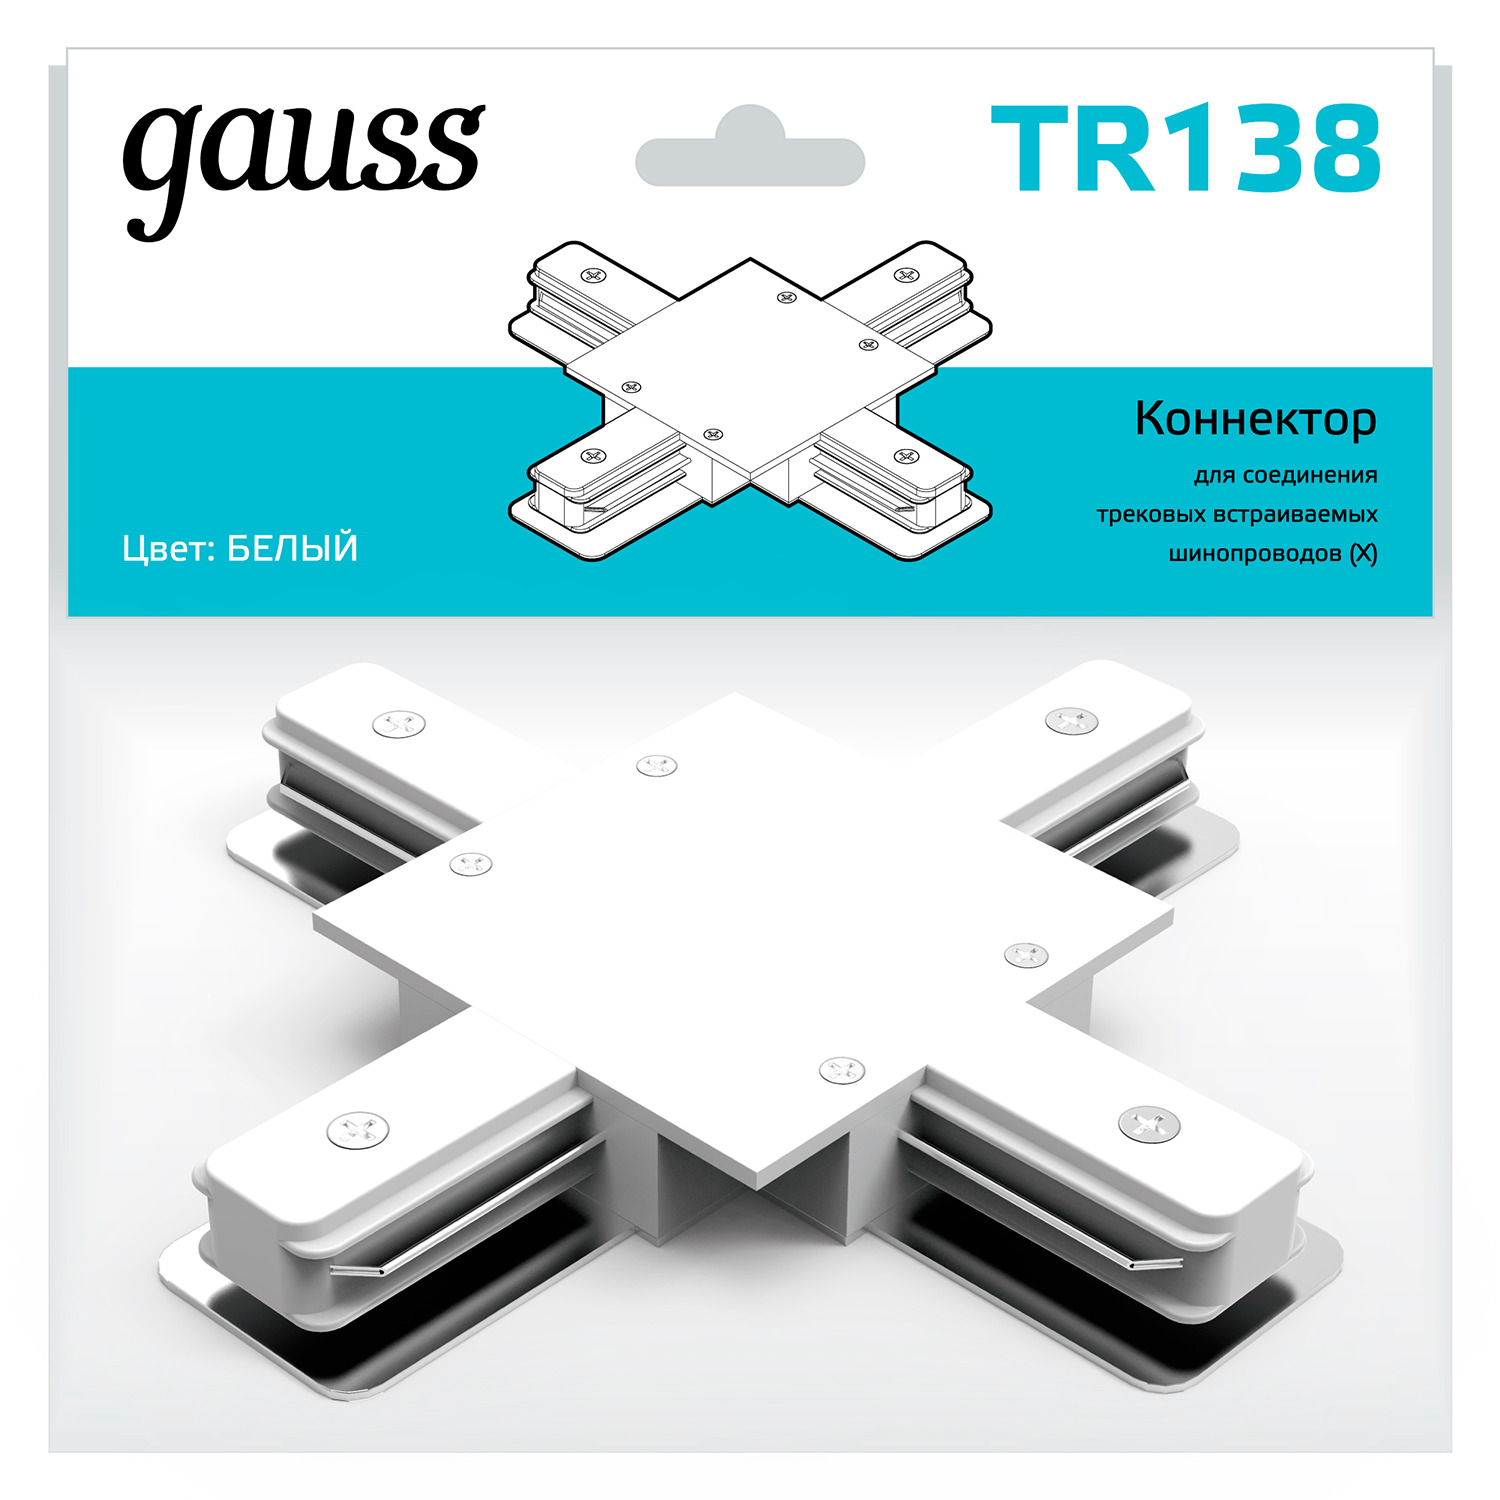 Коннектор Gauss для встраиваемых трековых шинопроводов (+) белый